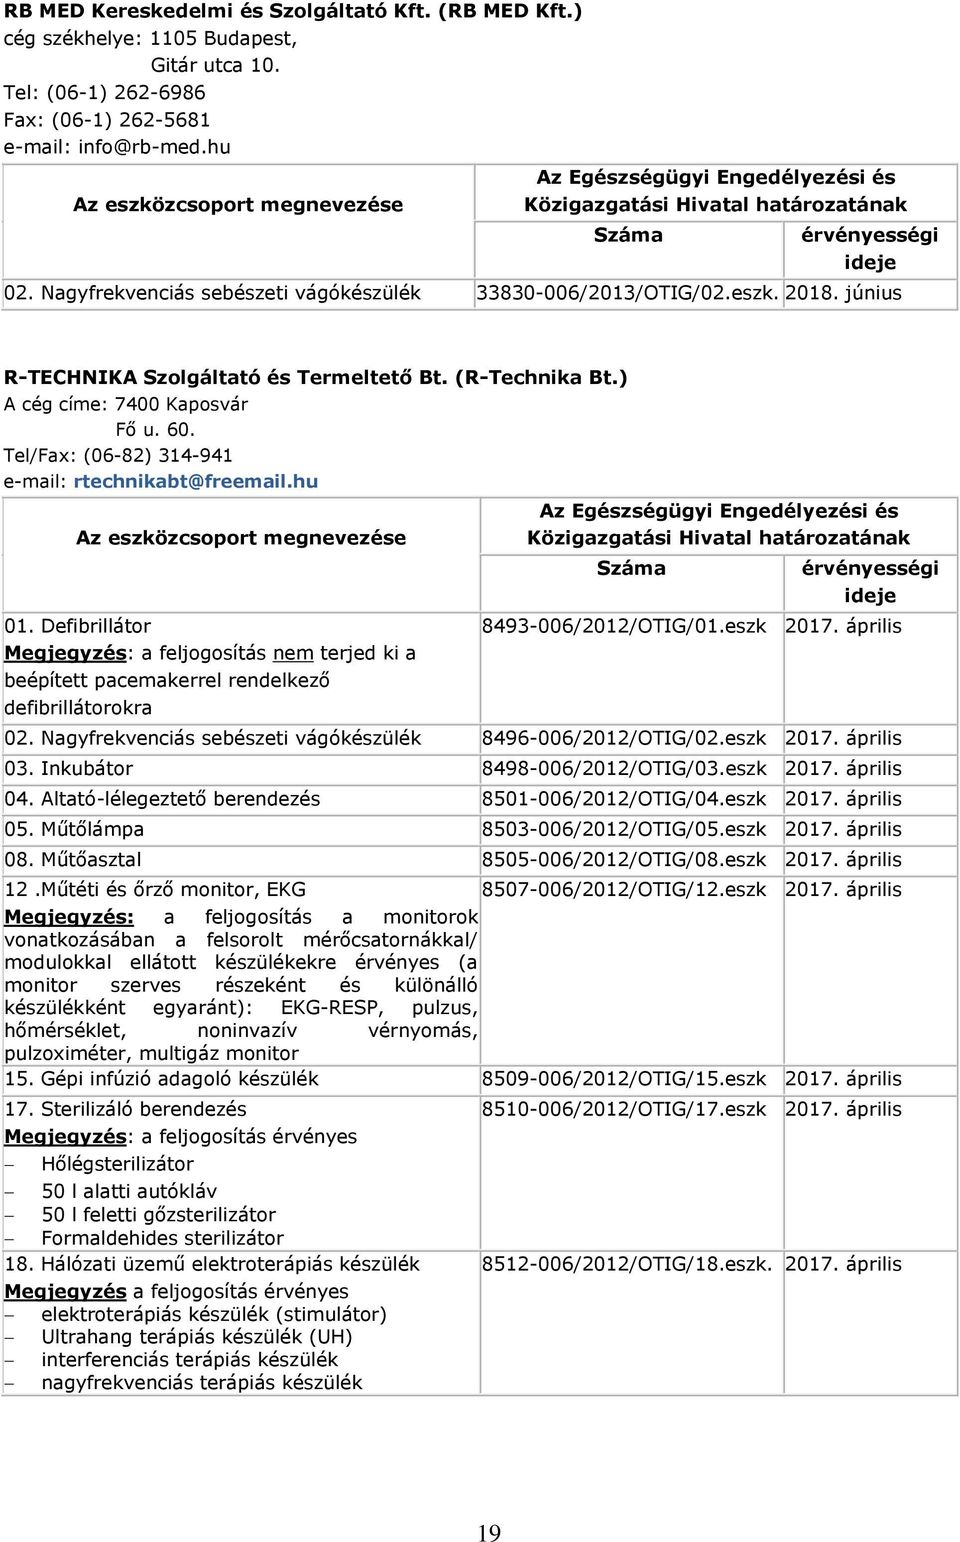 Tel/Fax: (06-82) 314-941 e-mail: rtechnikabt@freemail.hu 01. Defibrillátor Megjegyzés: a feljogosítás nem terjed ki a beépített pacemakerrel rendelkező defibrillátorokra 8493-006/2012/OTIG/01.